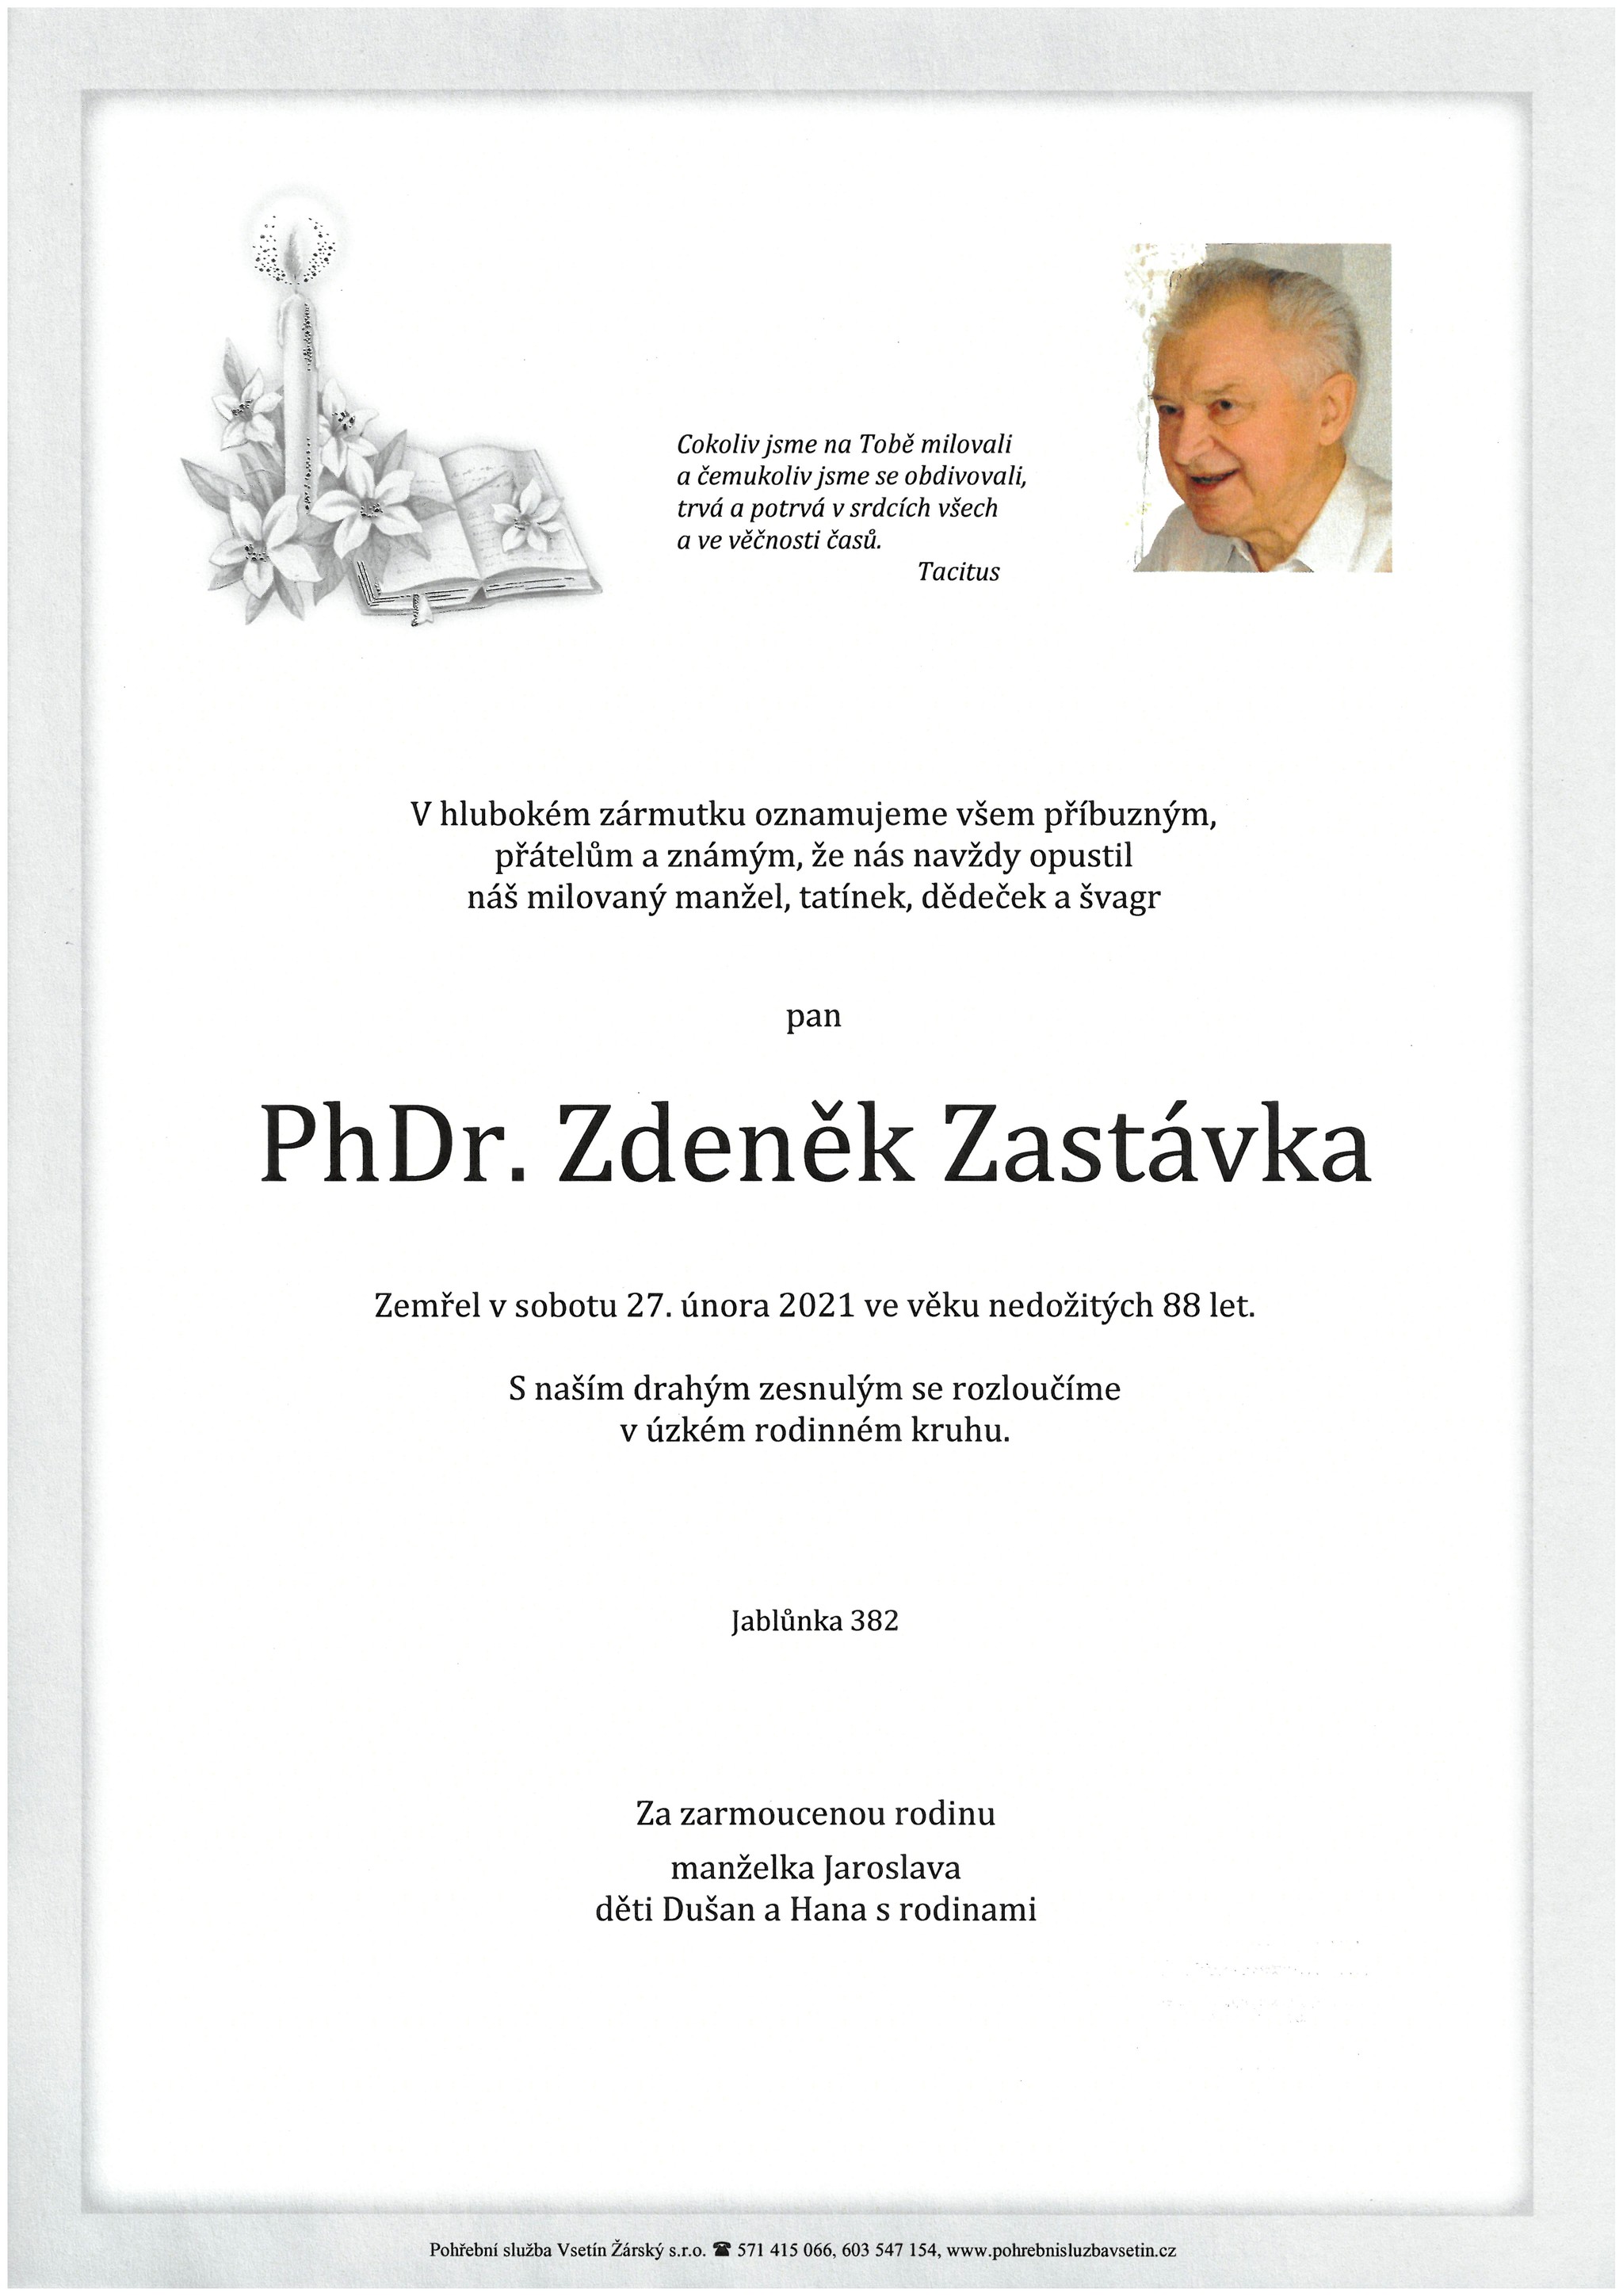 PhDr. Zdeněk Zastávka